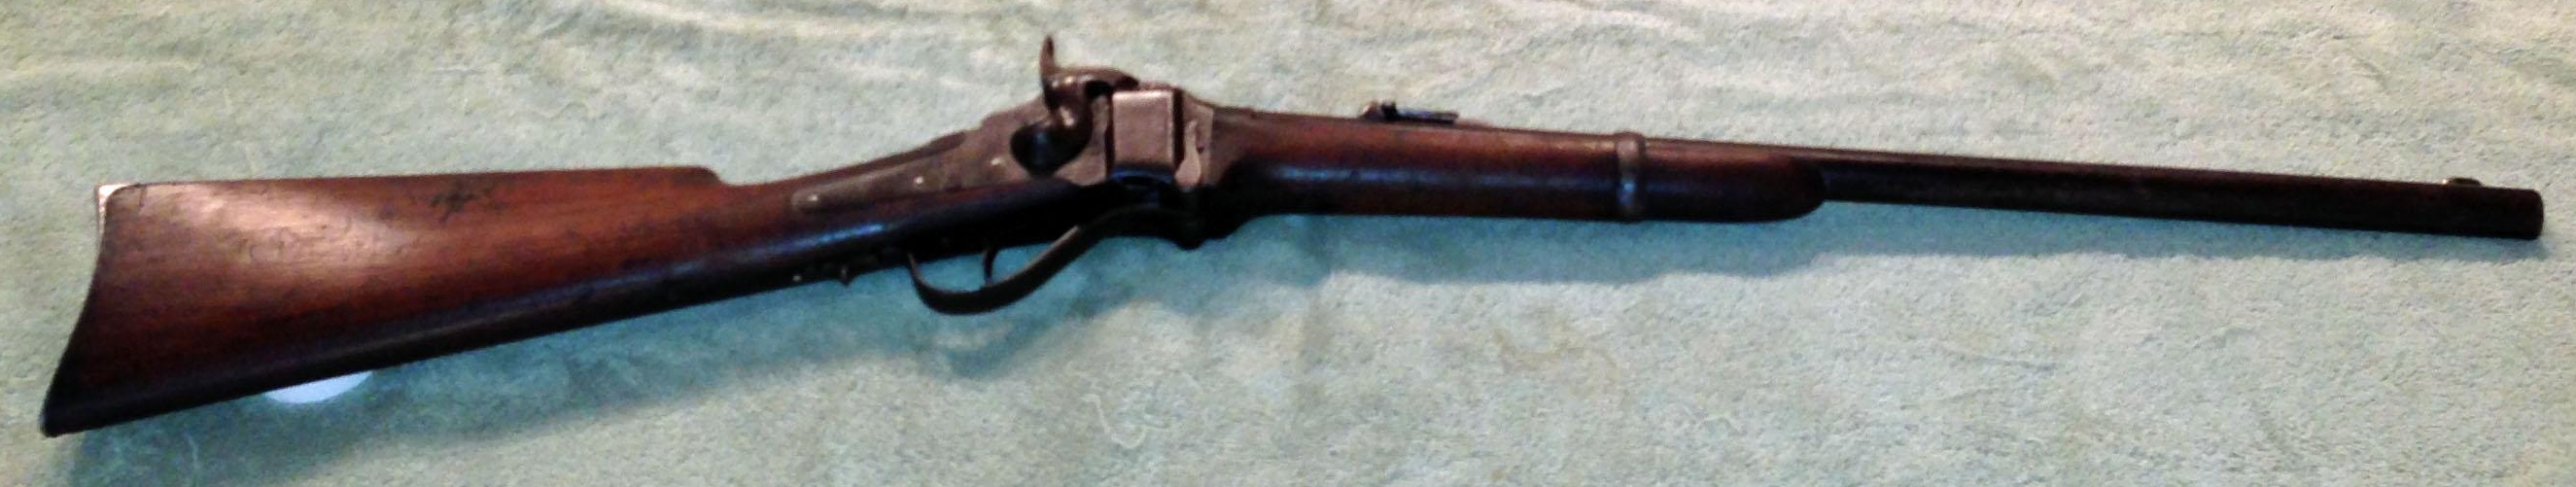 Carabine Sharps 1869